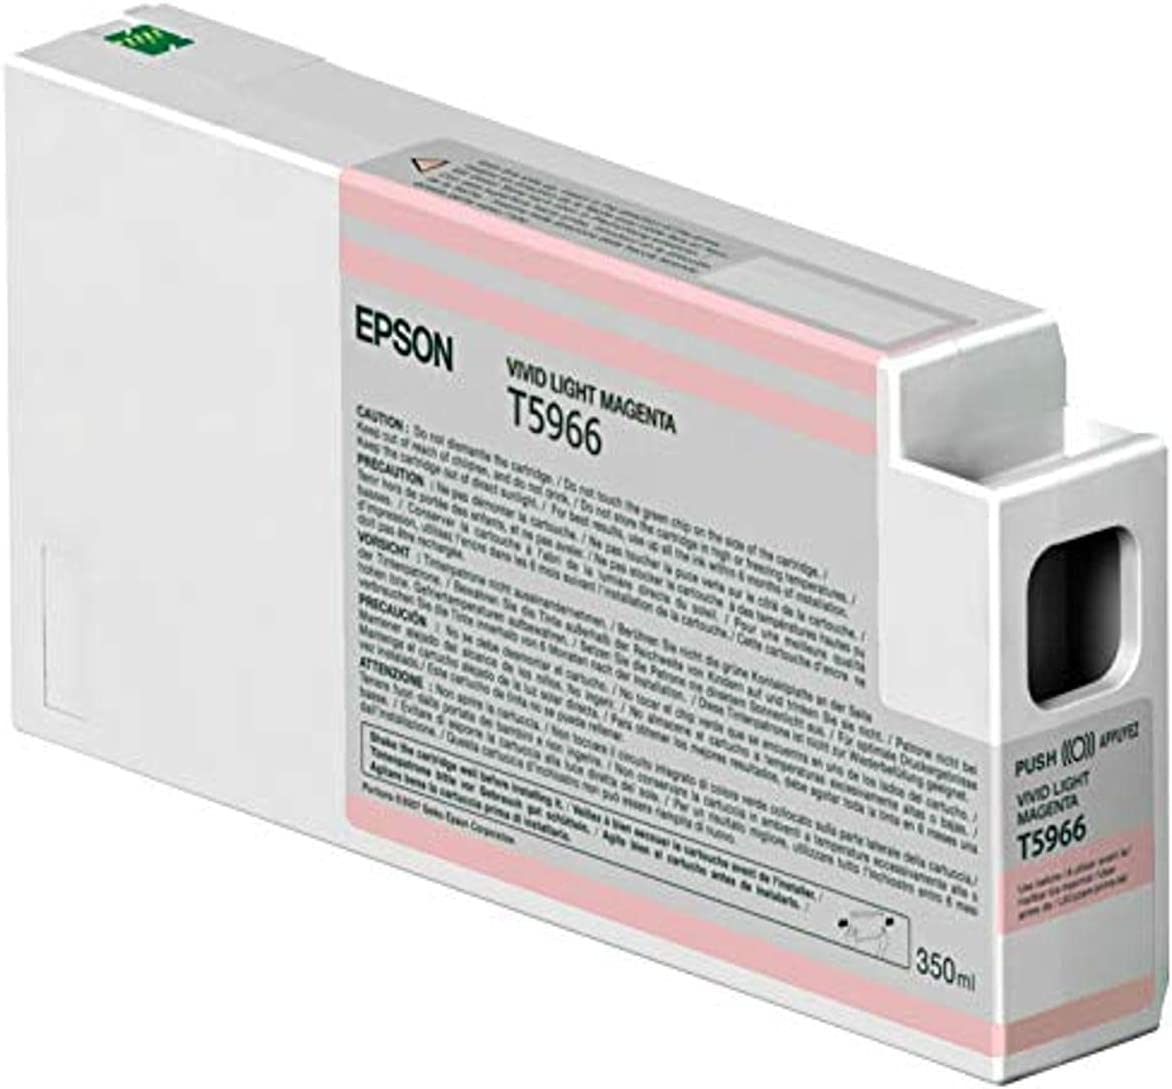 EPSON-T596600